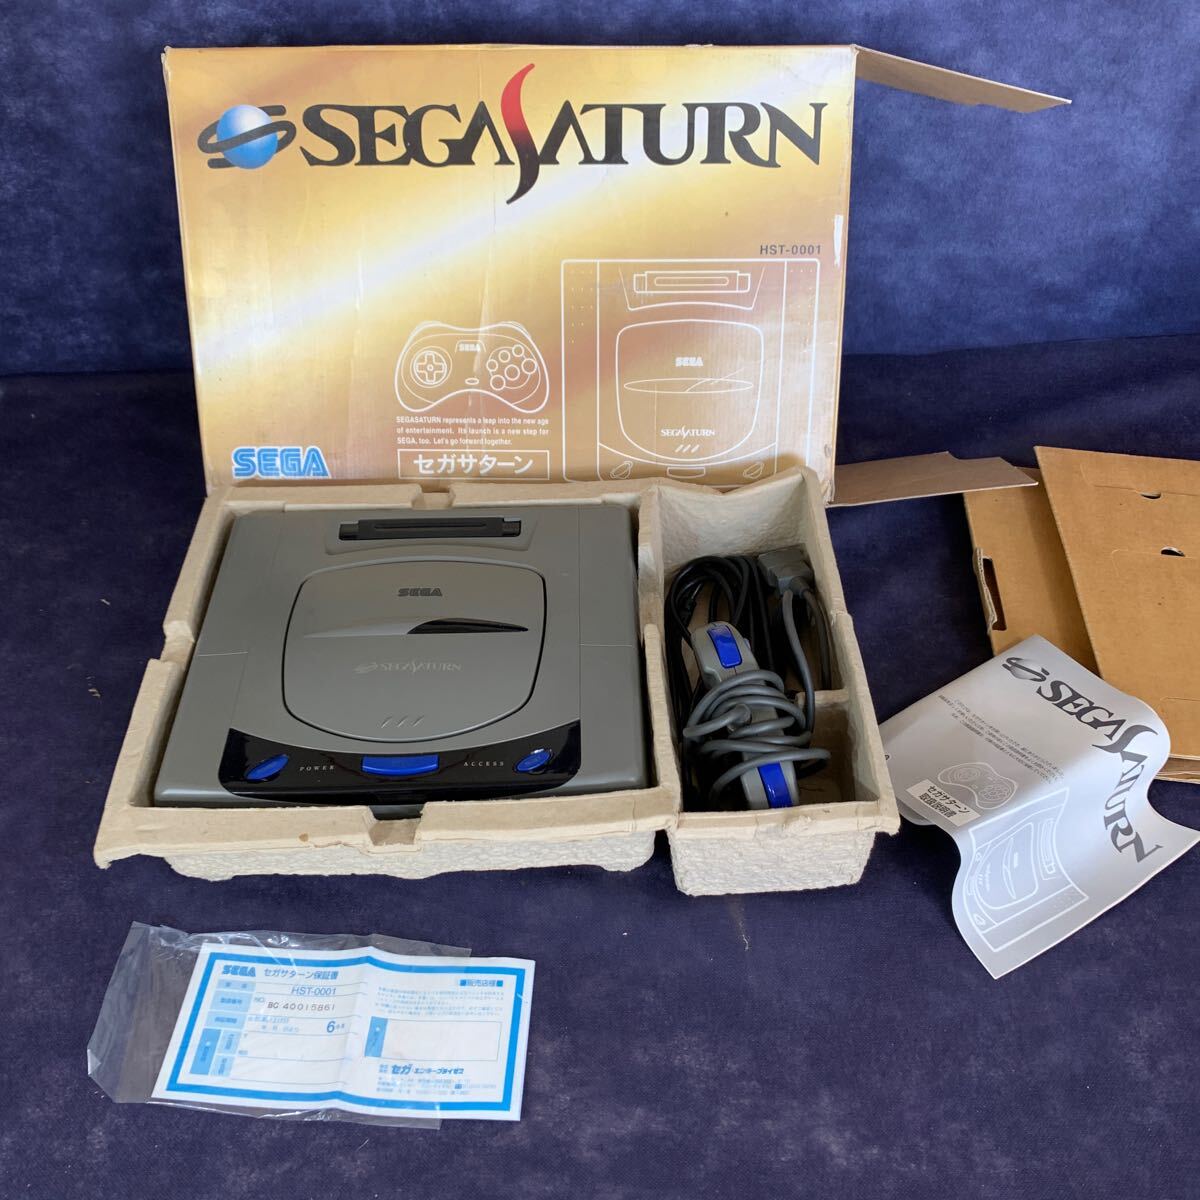 (説明書付き)セガサターン SEGA SATURN ゲーム機 コントローラー ケーブル HST-0001_画像1